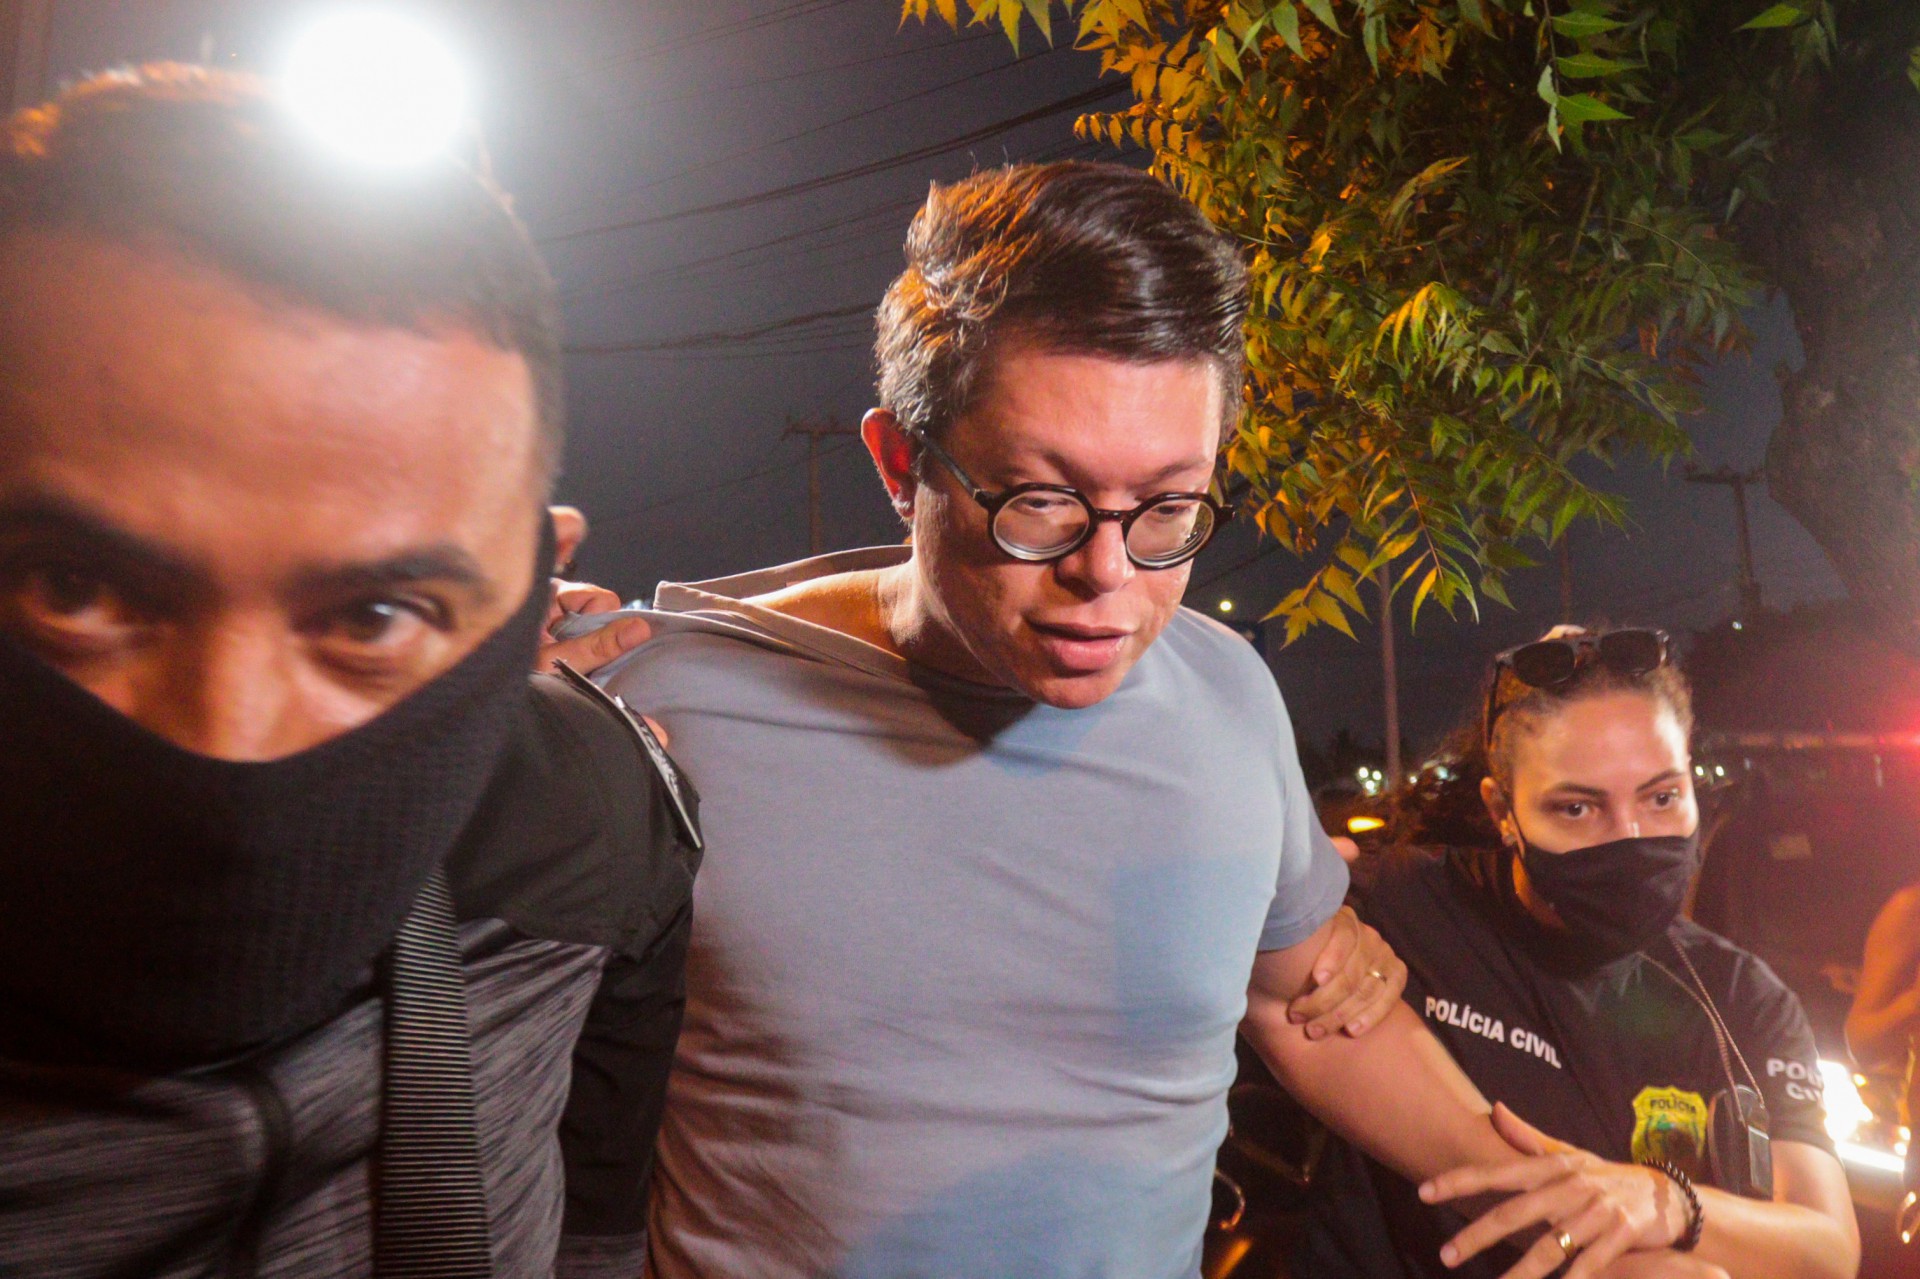 DJ Ivis é preso três dias após vídeo com agressões; veja linha do tempo |  Ceará - Últimas Notícias do Ceará | O POVO Online